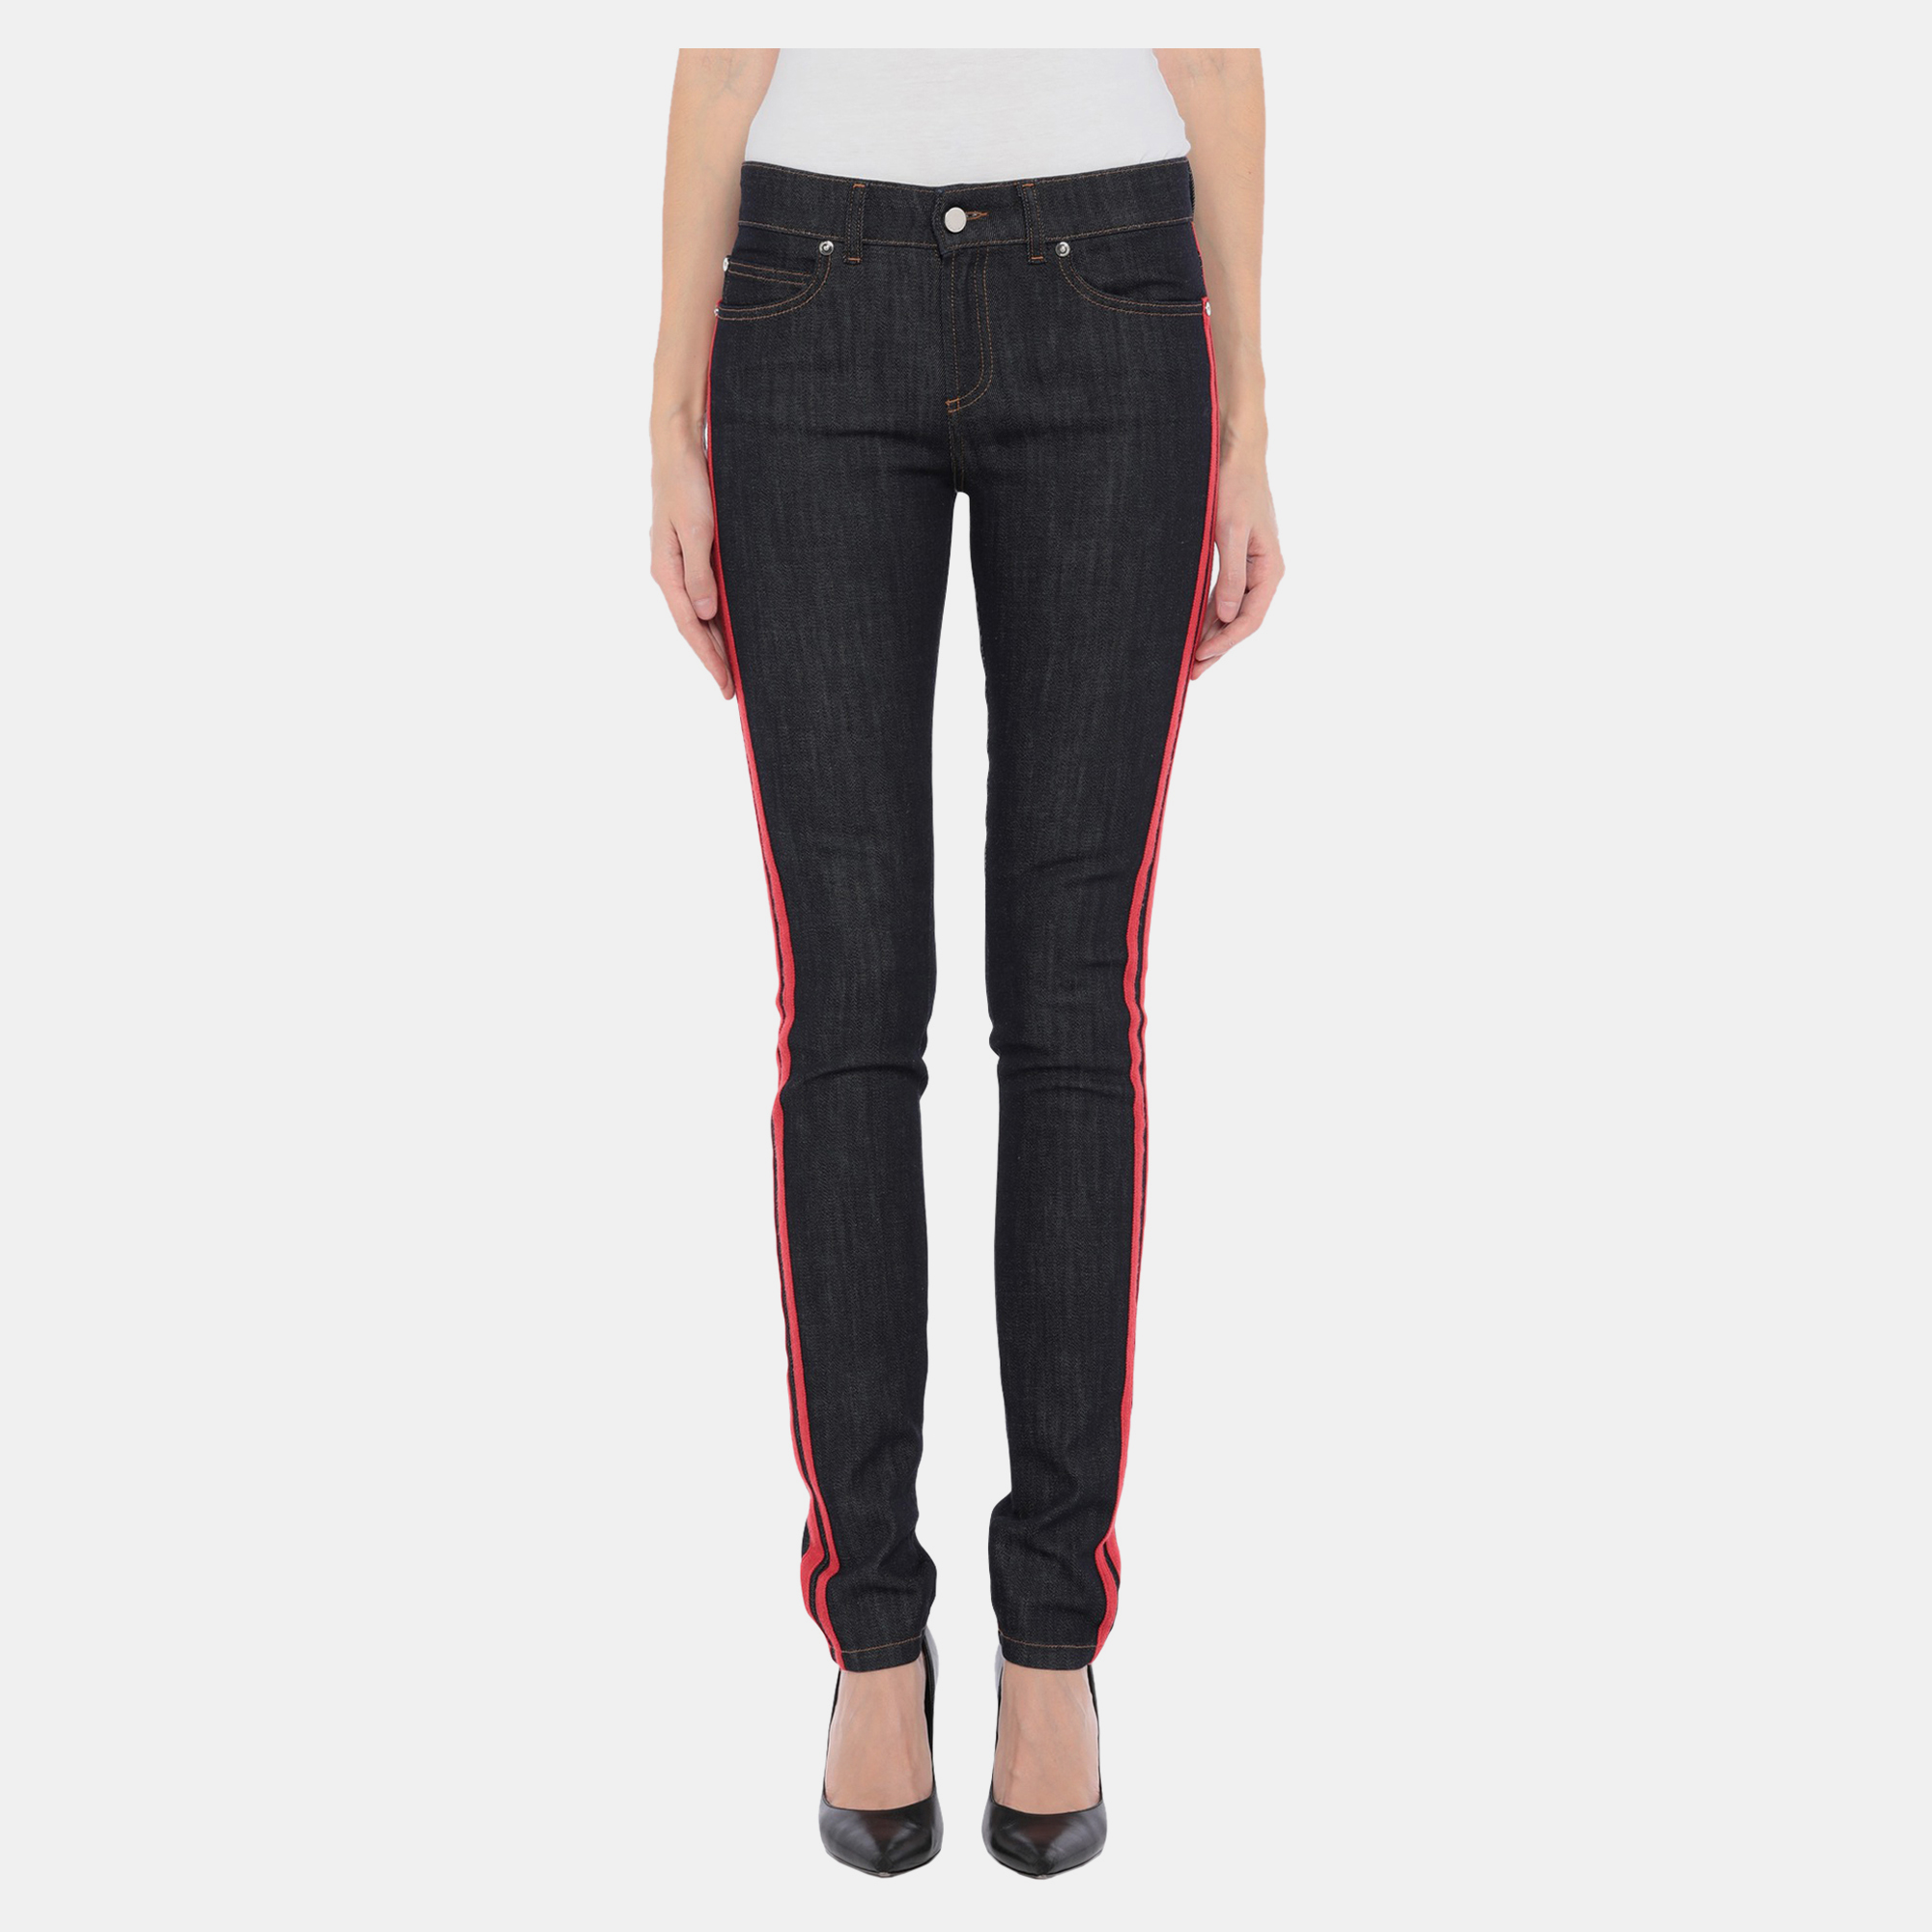 Red valentino redvalentino cotton jeans 26